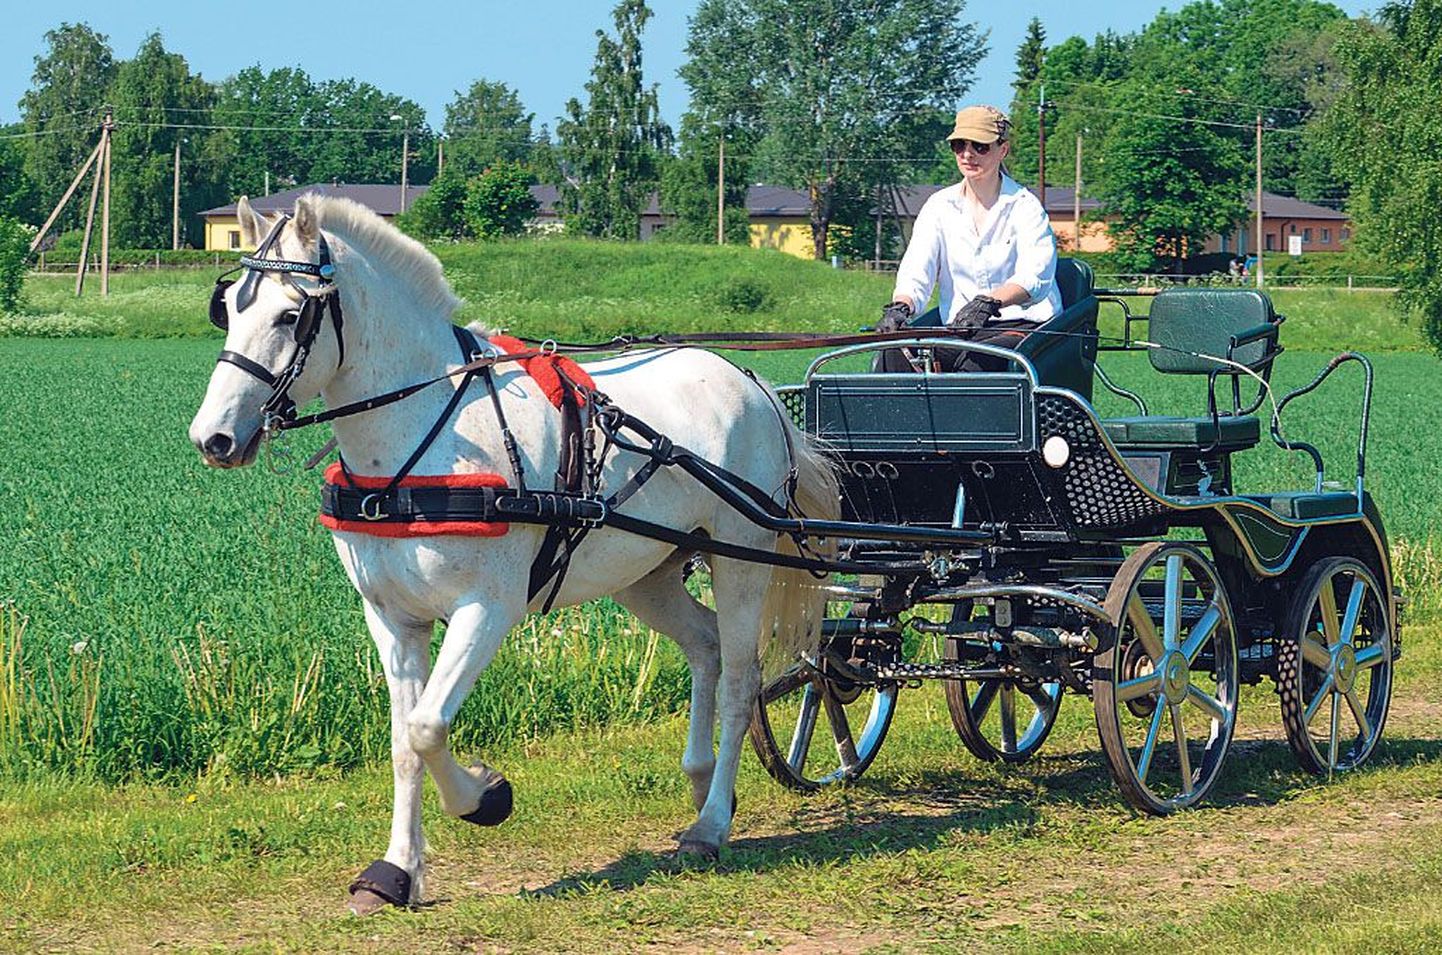 Eesti hobuse Allegro juhtis võistlusrajale Anu Pärisoo. Uhke vanker on tehtud Poolas, kus on Ida-Euroopa parimad hoburakendite meistrid, kellega Eesti hobusekasvatajatel ja hoburakendispordiviljelejail on kujunenud head koostöösuhted.